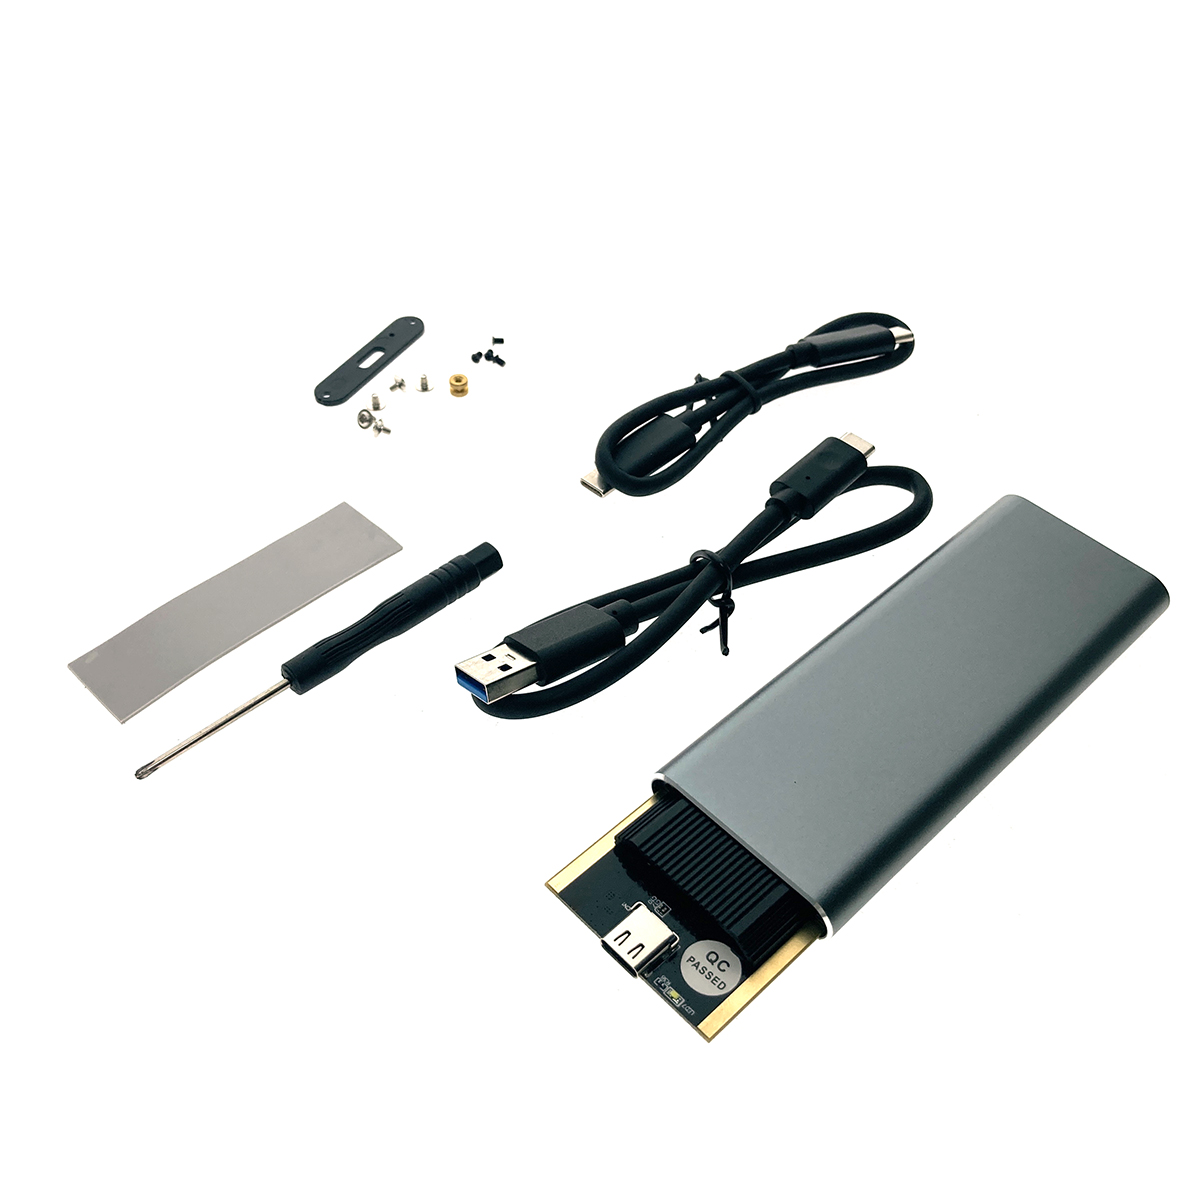 Внешний корпуc USB3.1 для M.2 nVME SSD, key M, модель USBnVME3 ver2, Espada